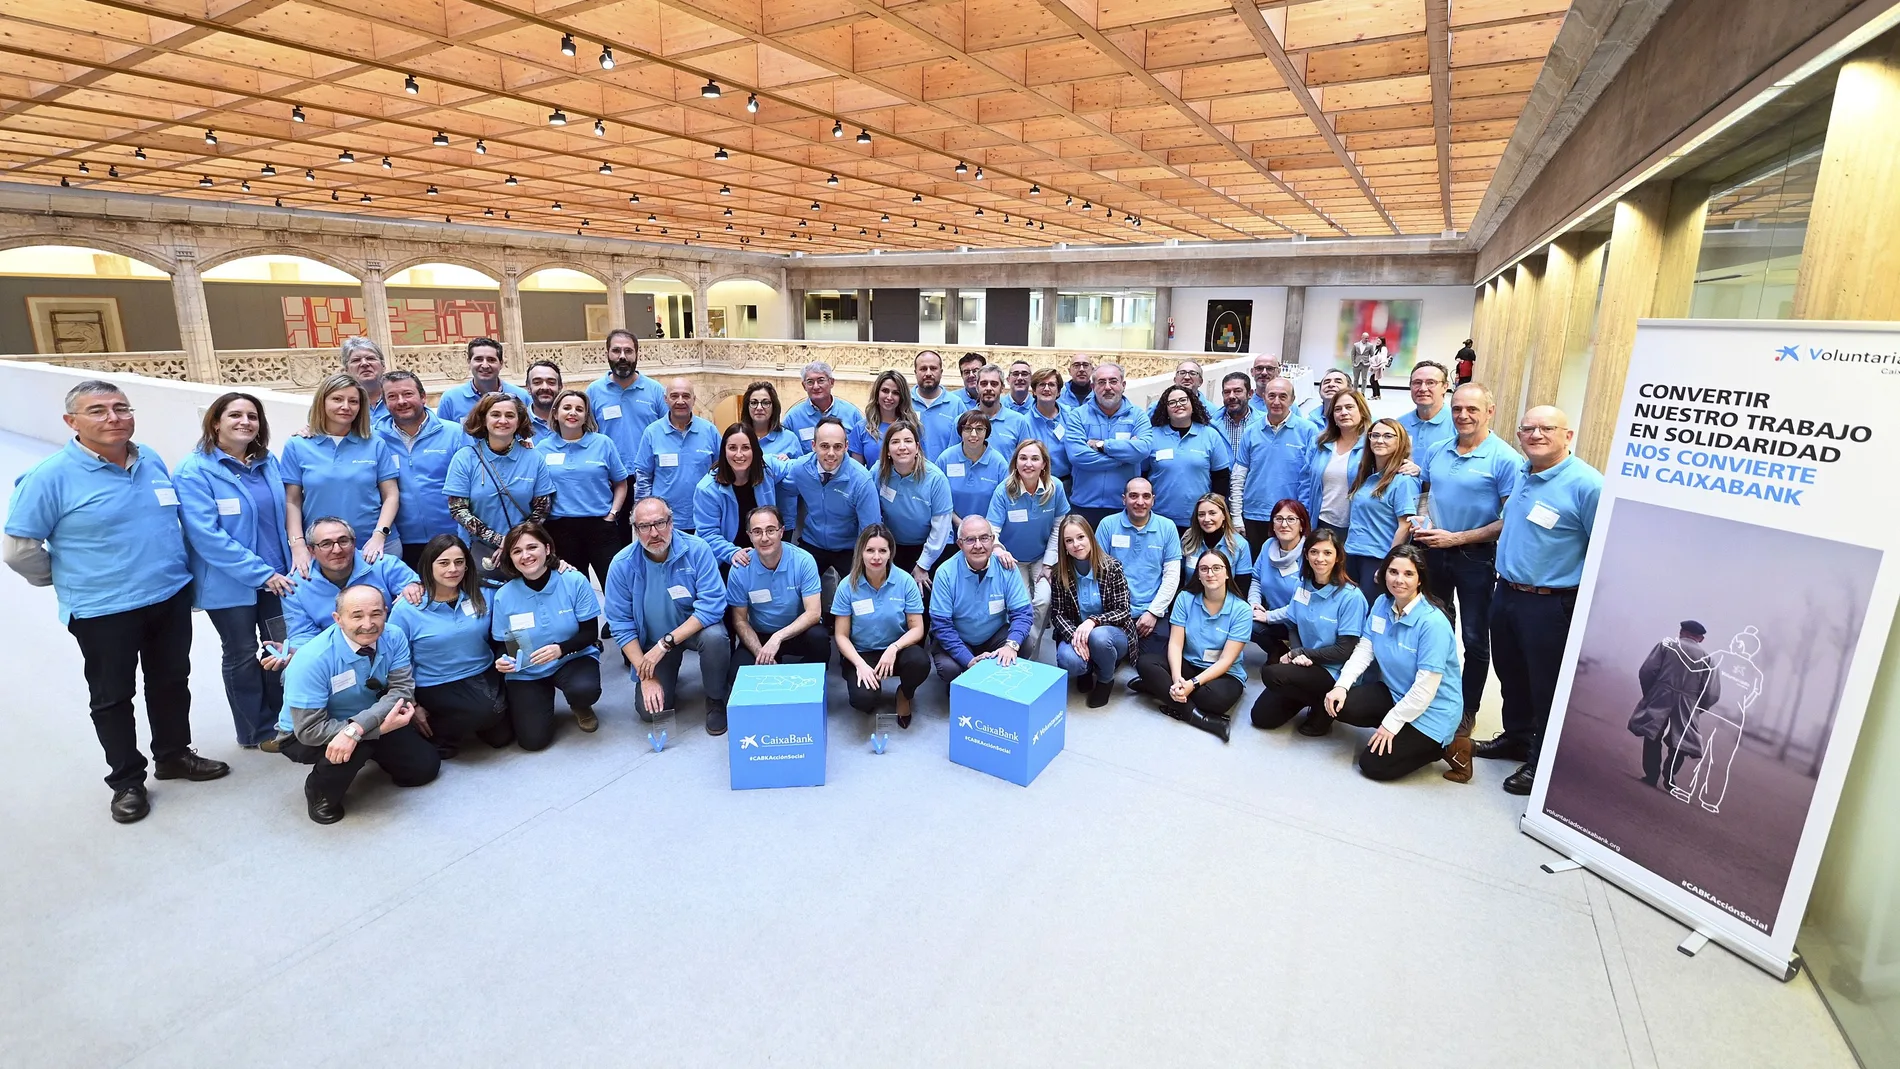 Los voluntarios de CaixaBank en Castilla y León han participado este año en 800 actividades que han beneficiado a más de 10.000 personas vulnerables